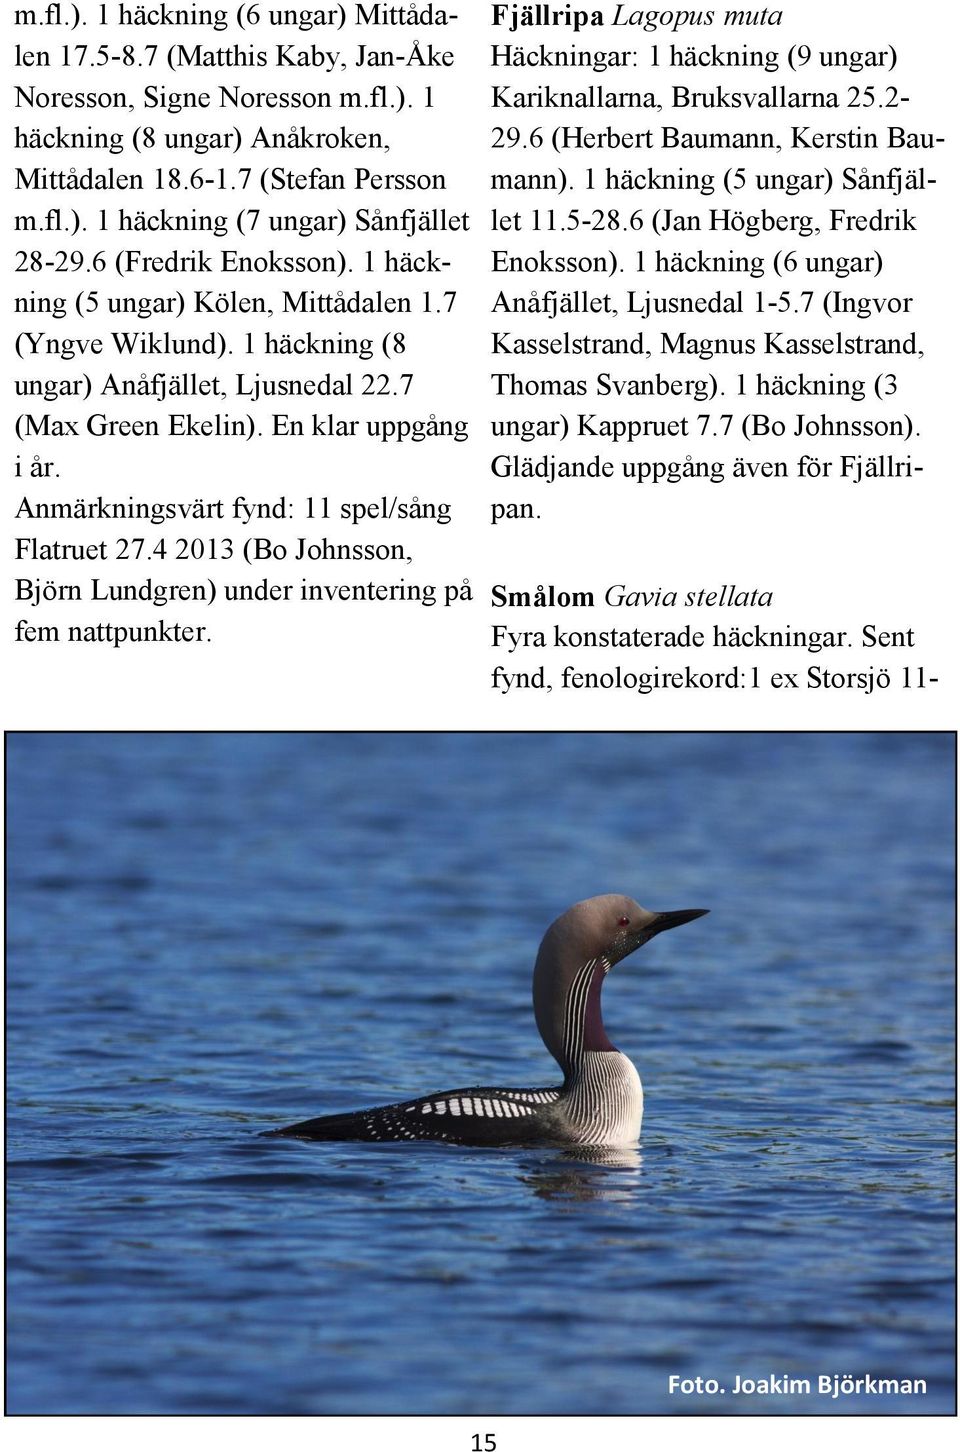 Anmärkningsvärt fynd: 11 spel/sång Flatruet 27.4 2013 (Bo Johnsson, Björn Lundgren) under inventering på fem nattpunkter.